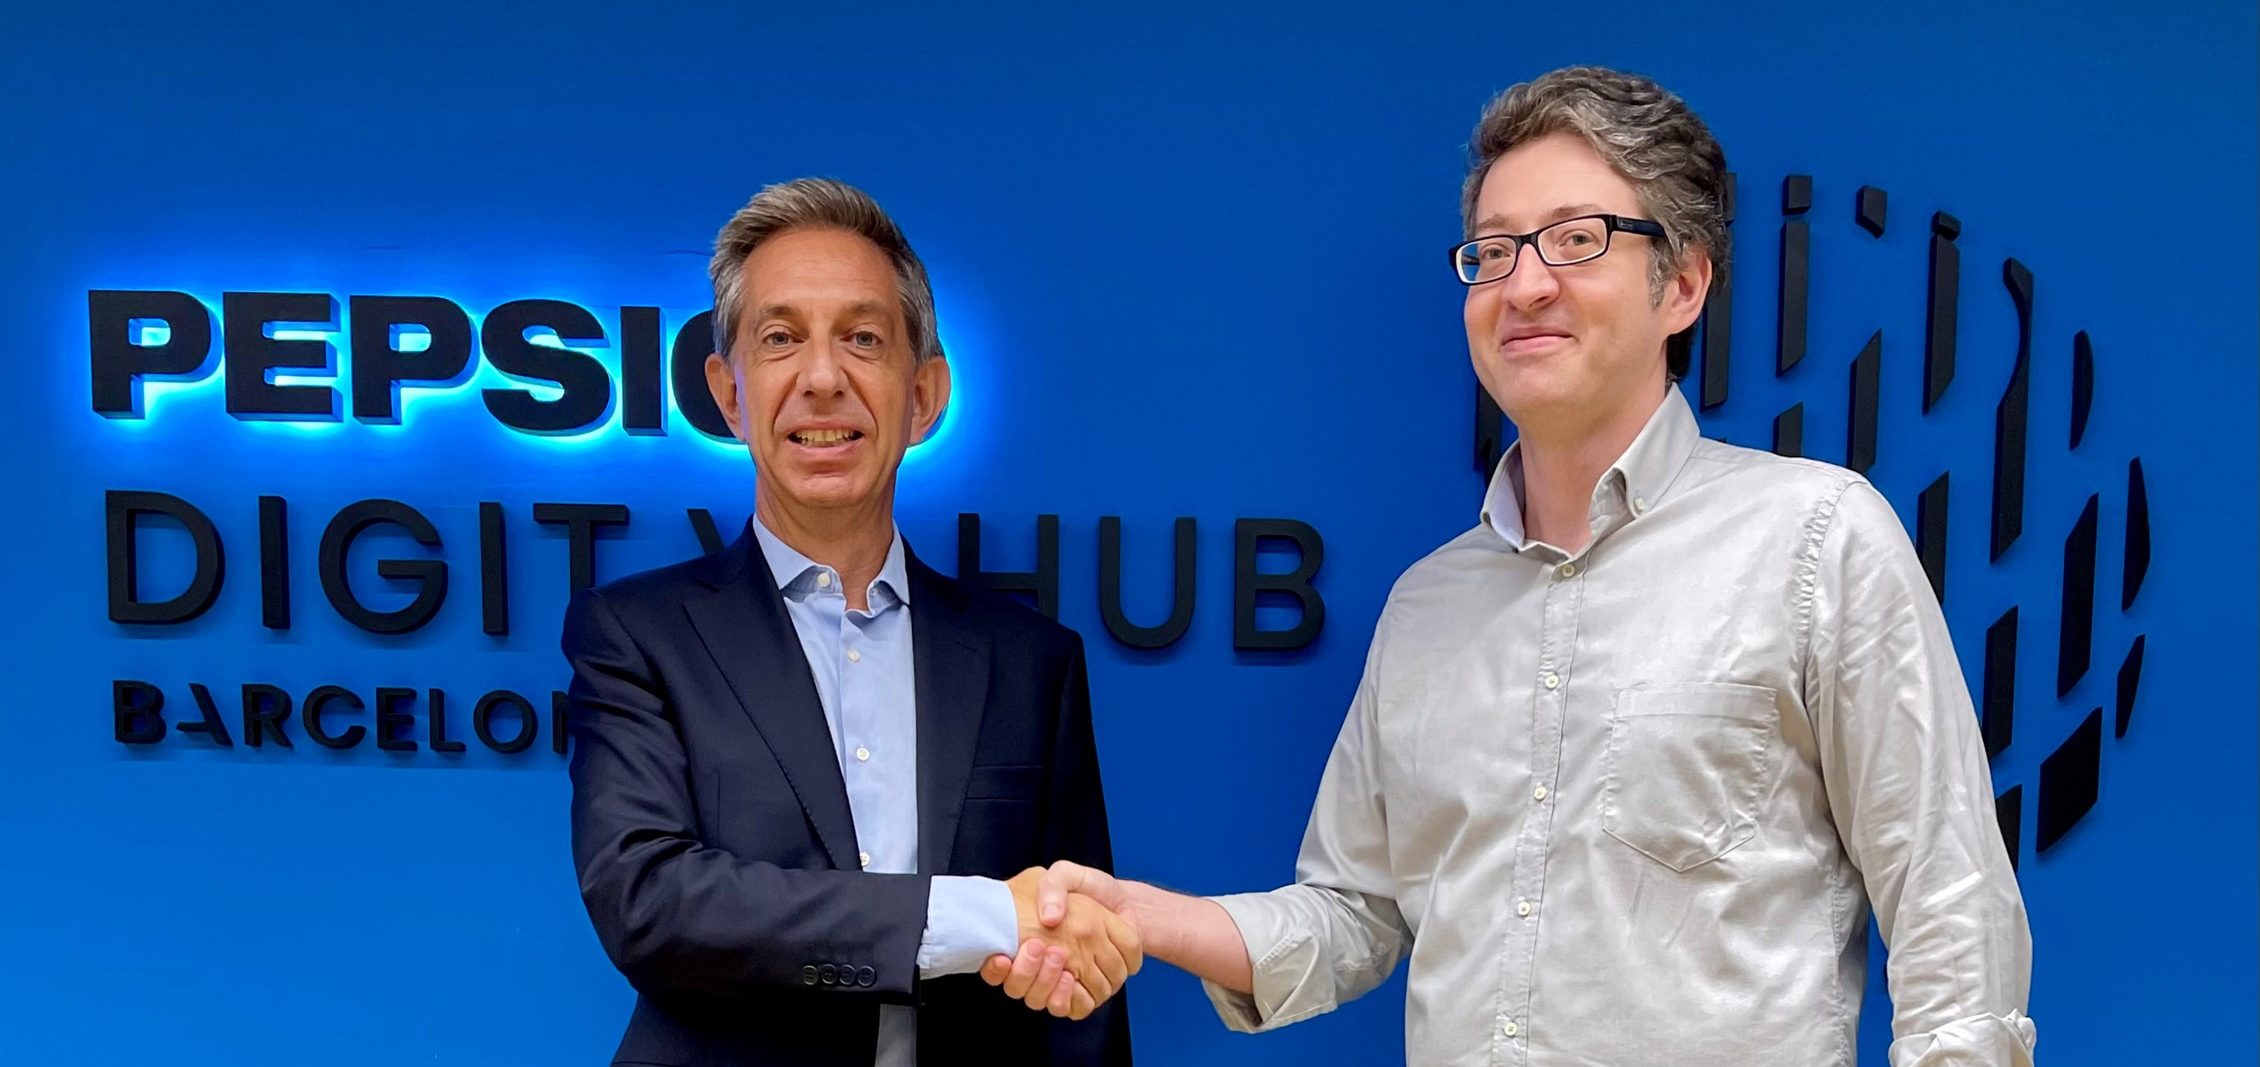 Pepsico i Mobile World Capital Barcelona uneixen forces per impulsar el talent digital